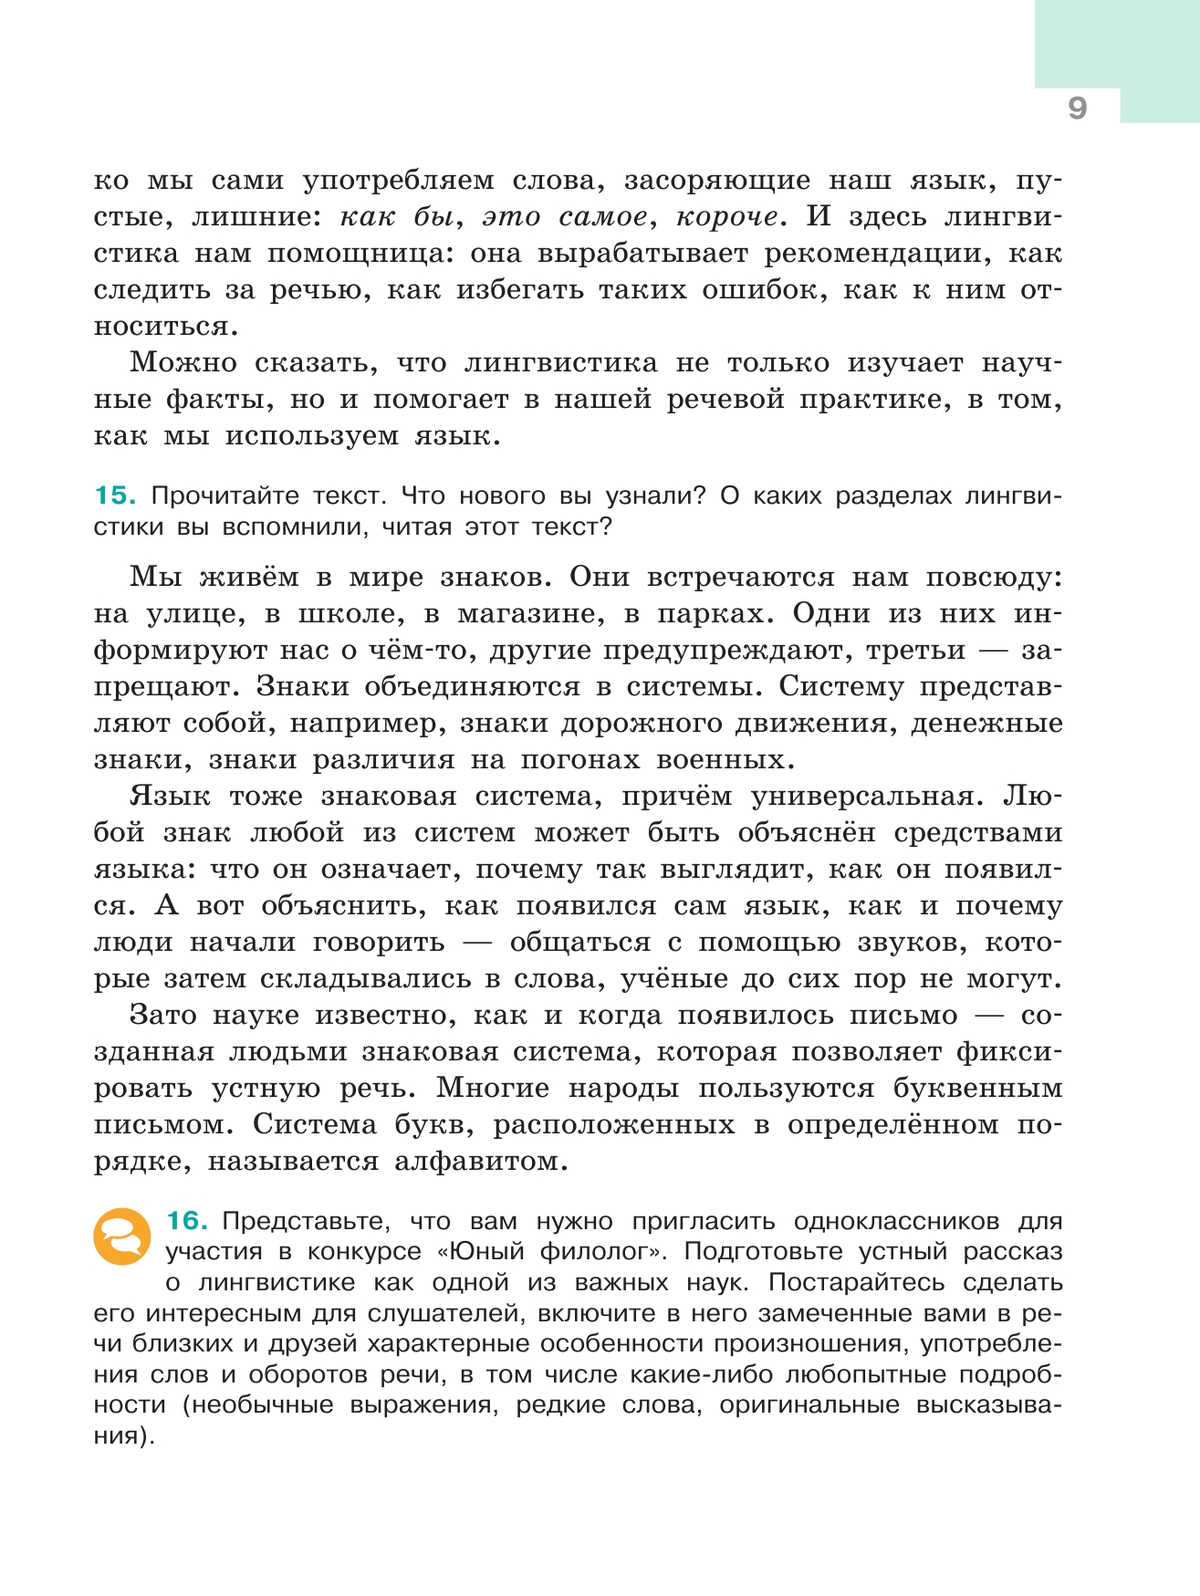 Русский язык. 5 класс. Учебник. В 2-х ч. Ч. 1 8